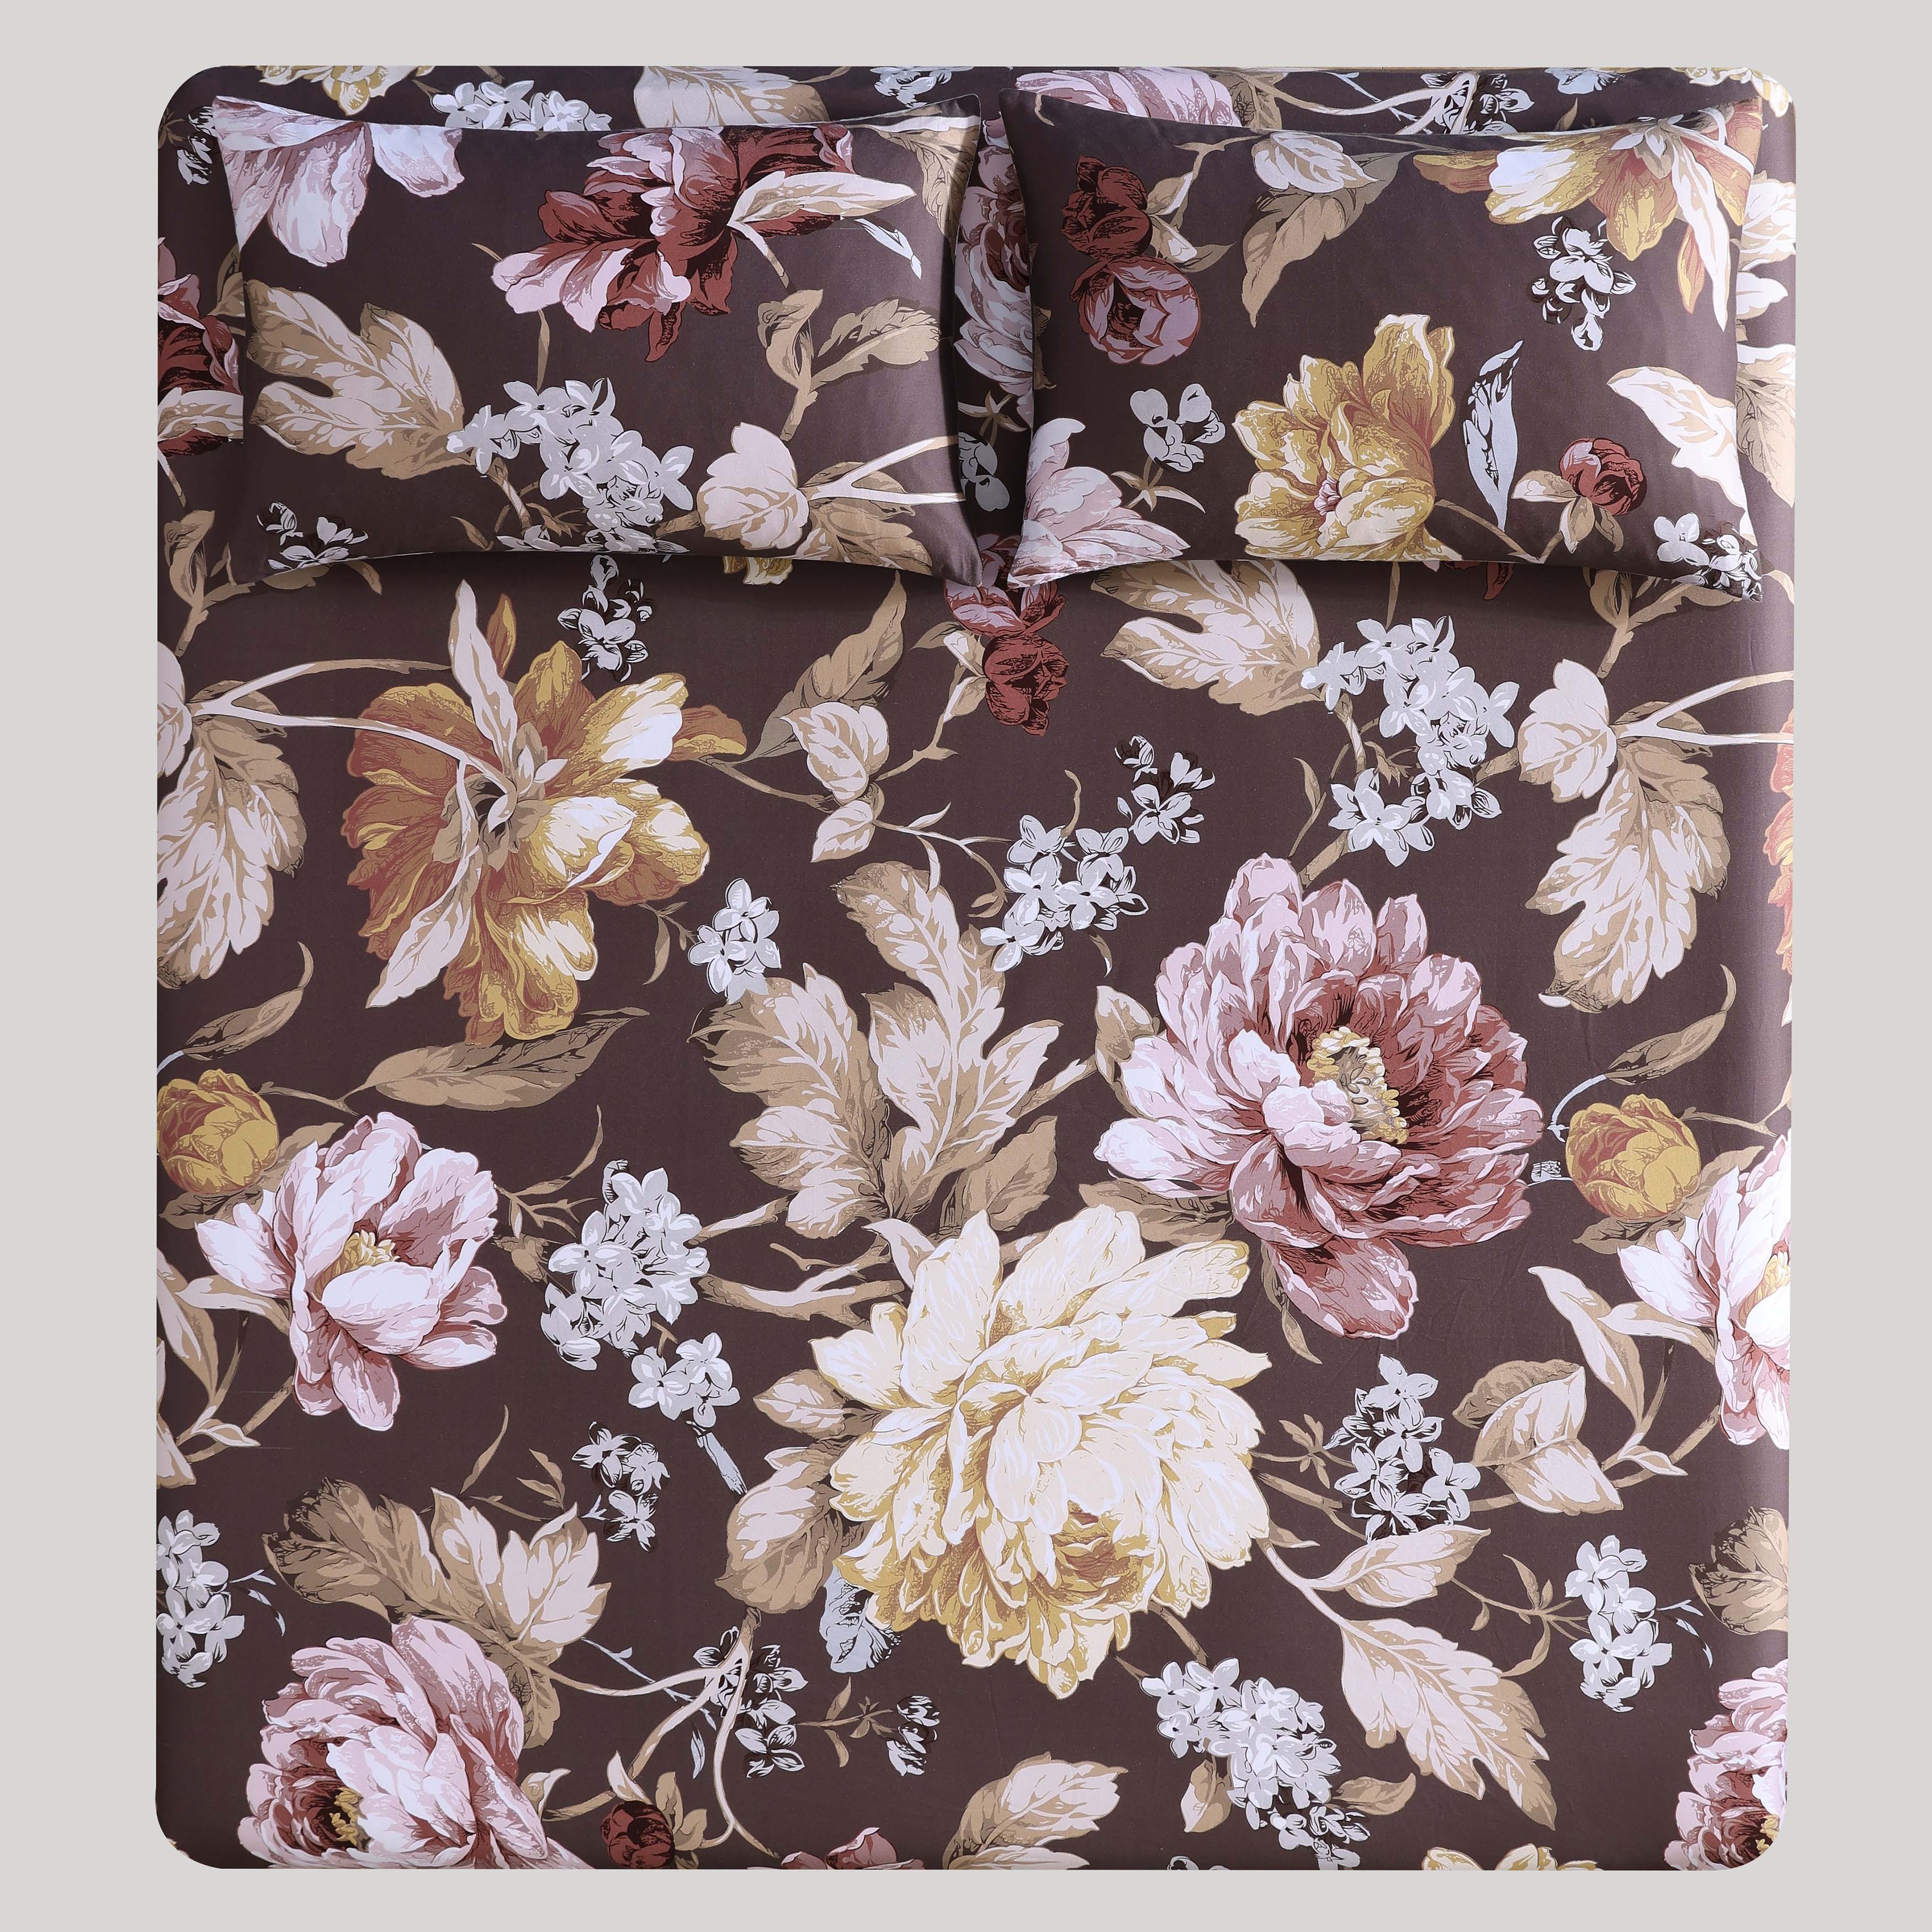 Floral Garden Mocha 100% Cotton Sateen 3 Piece Bed Sheet Set